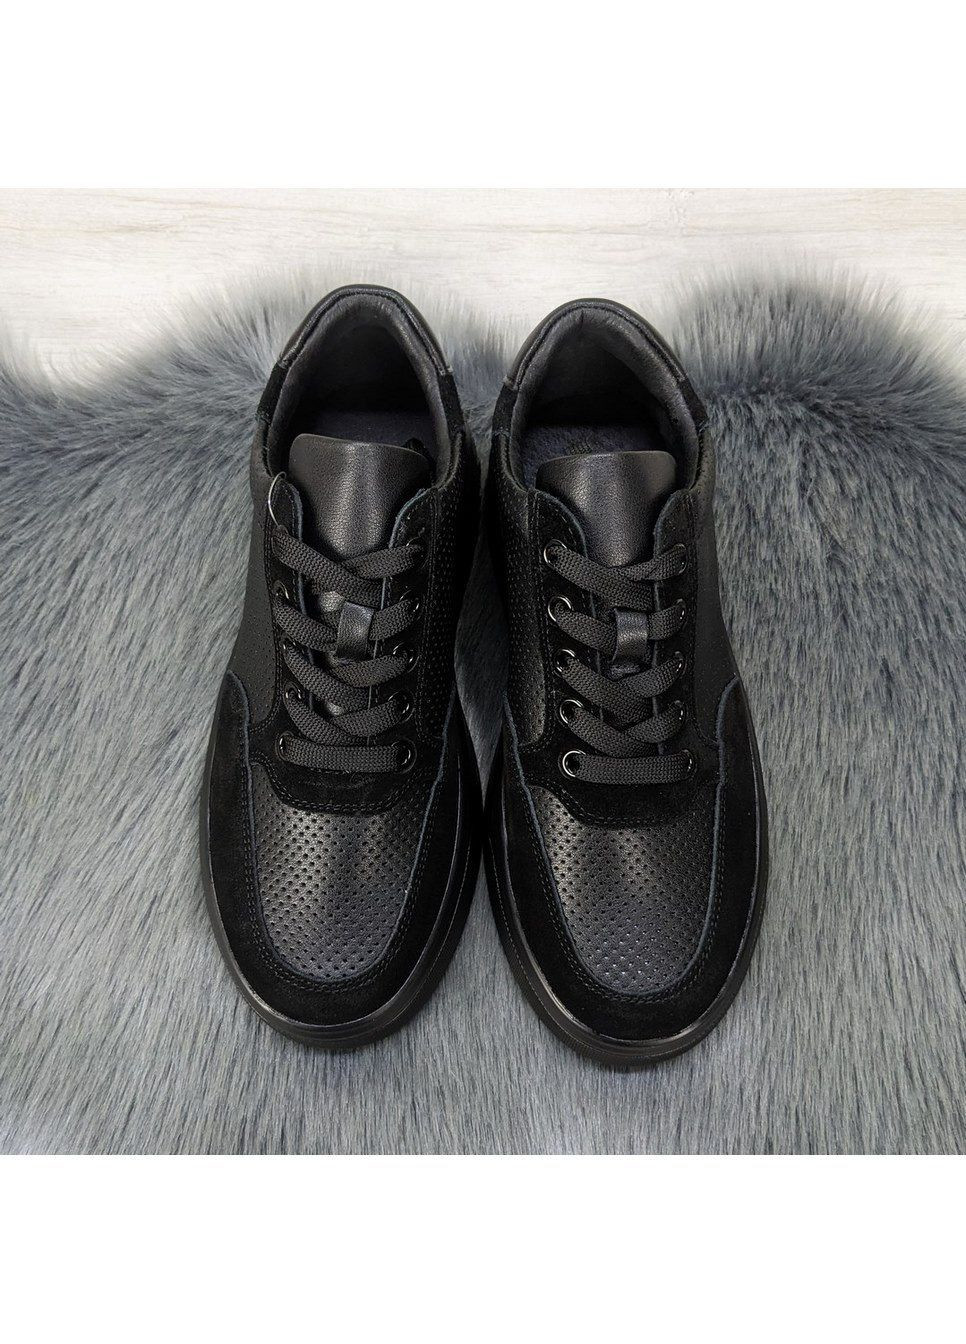 Чорні осінні кросівки жіночі шкіряні з перфорацією Hengji